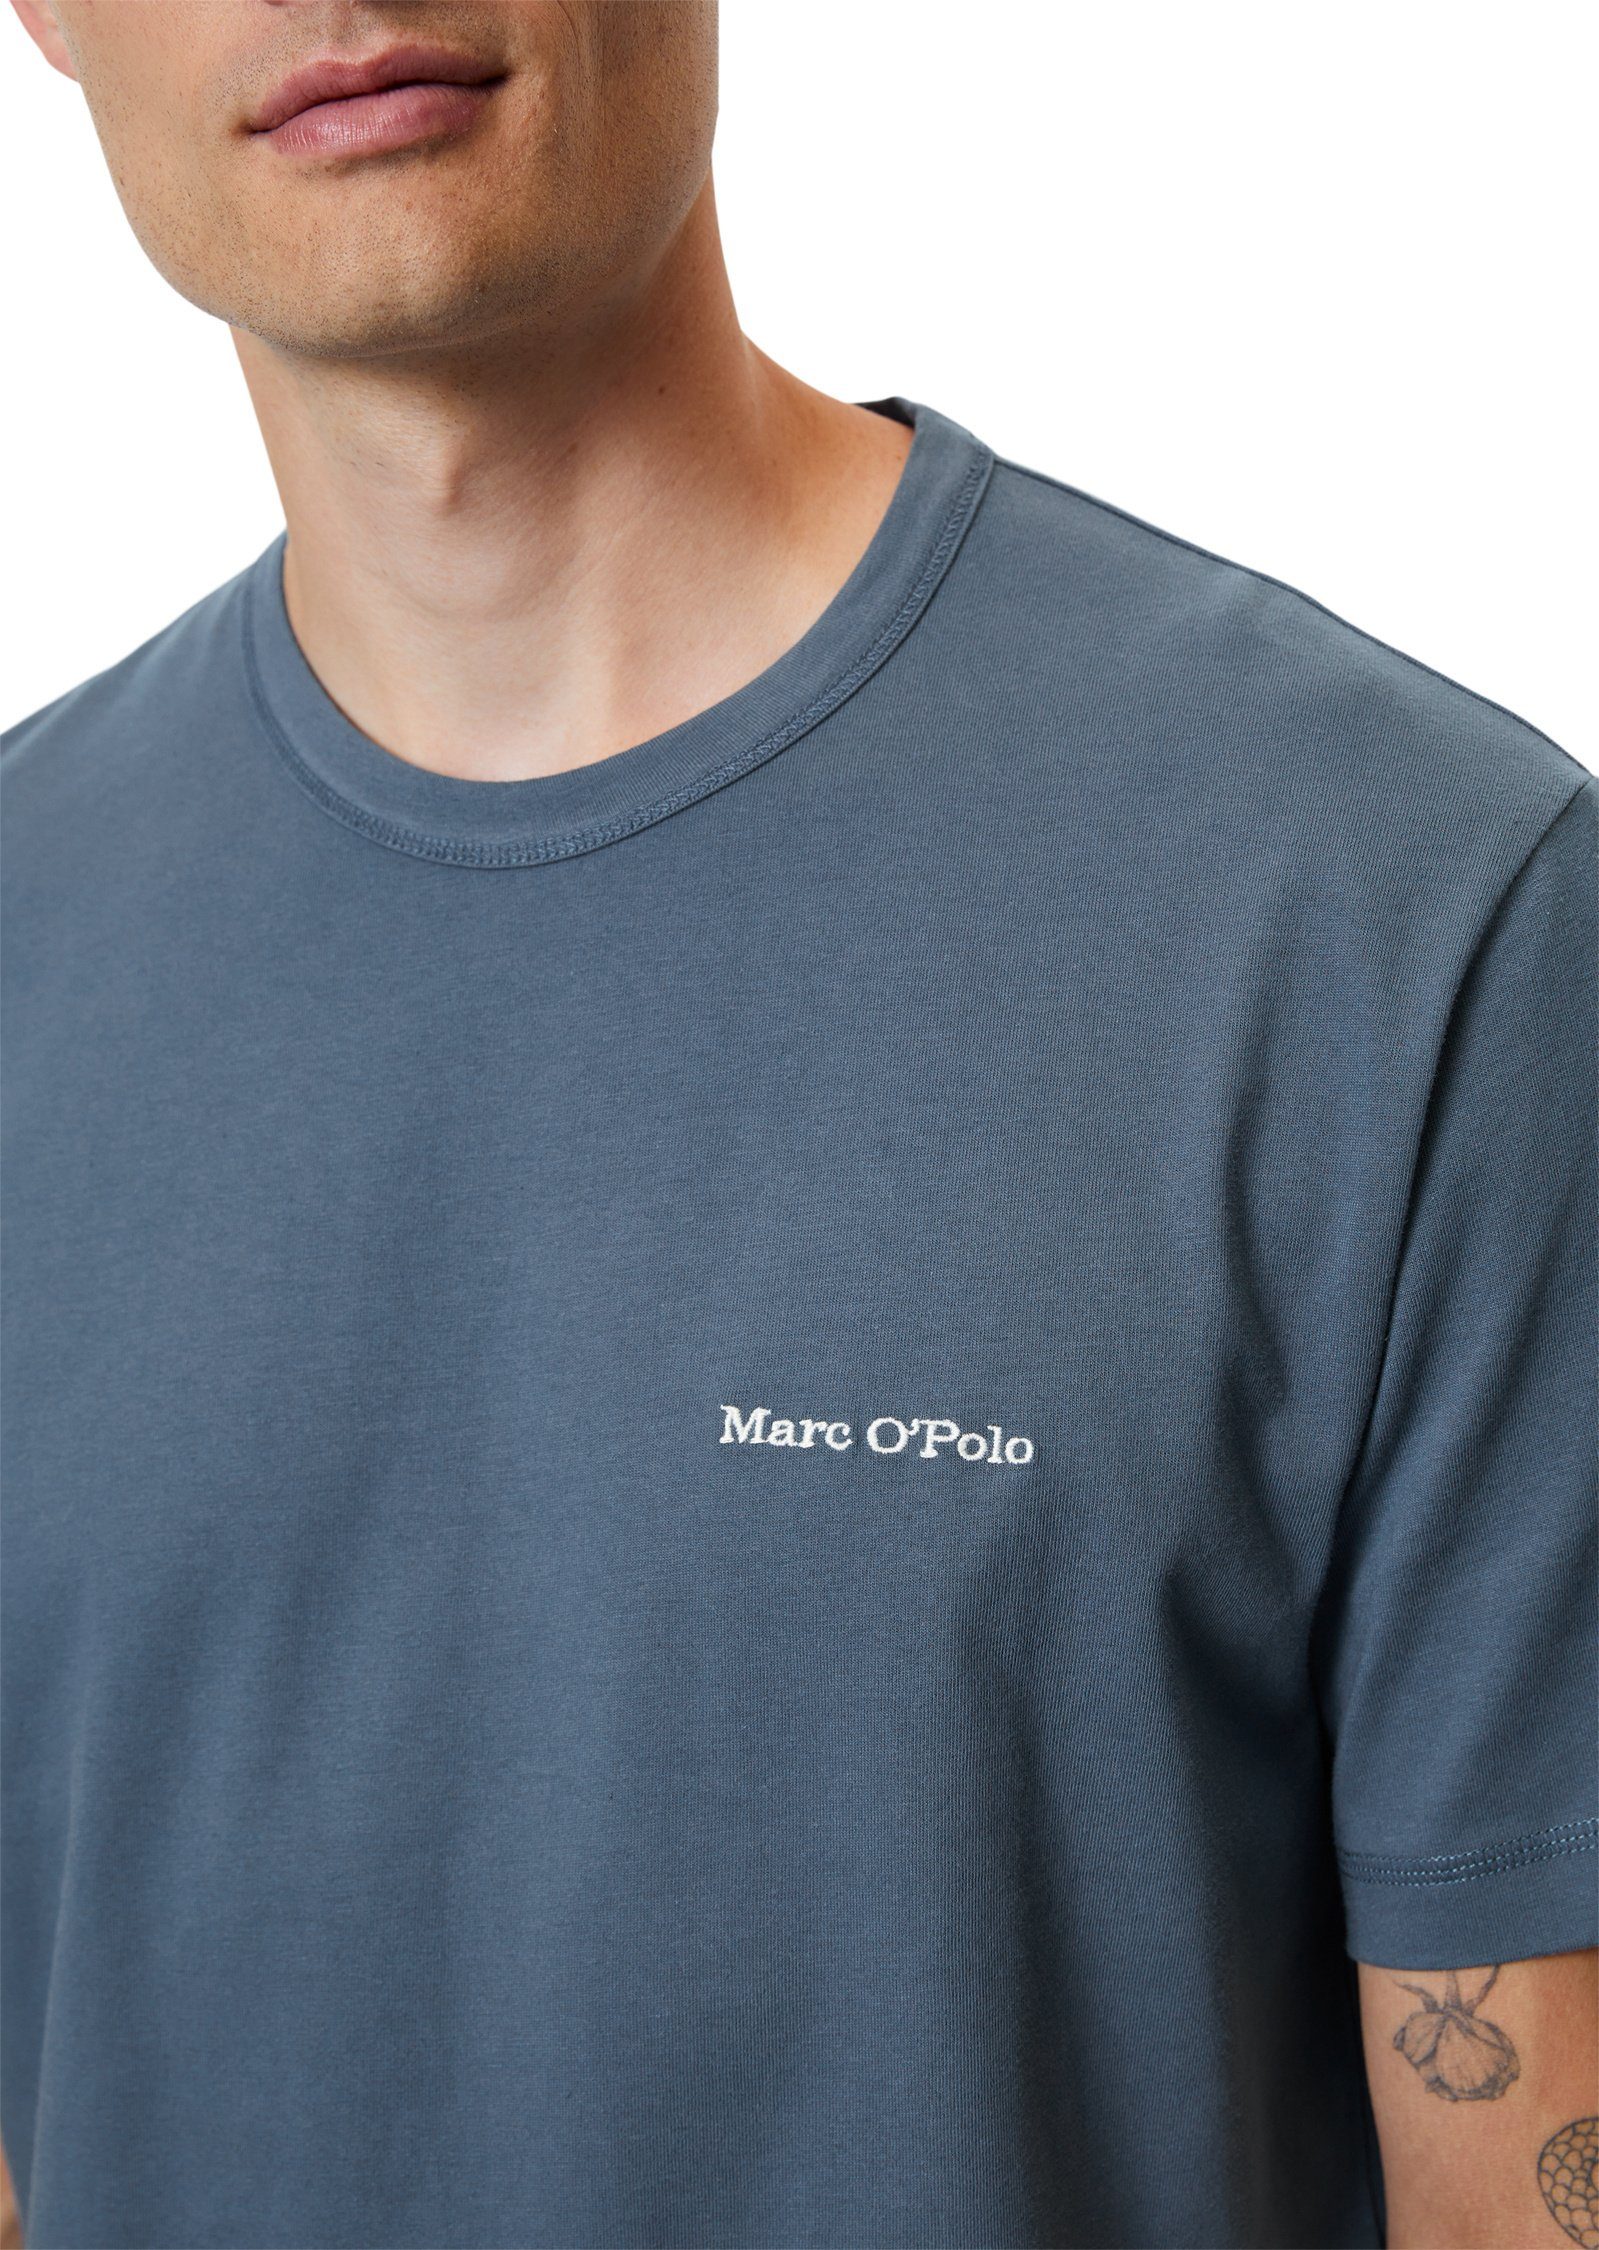 O'Polo reiner Bio-Baumwolle Marc T-Shirt aus